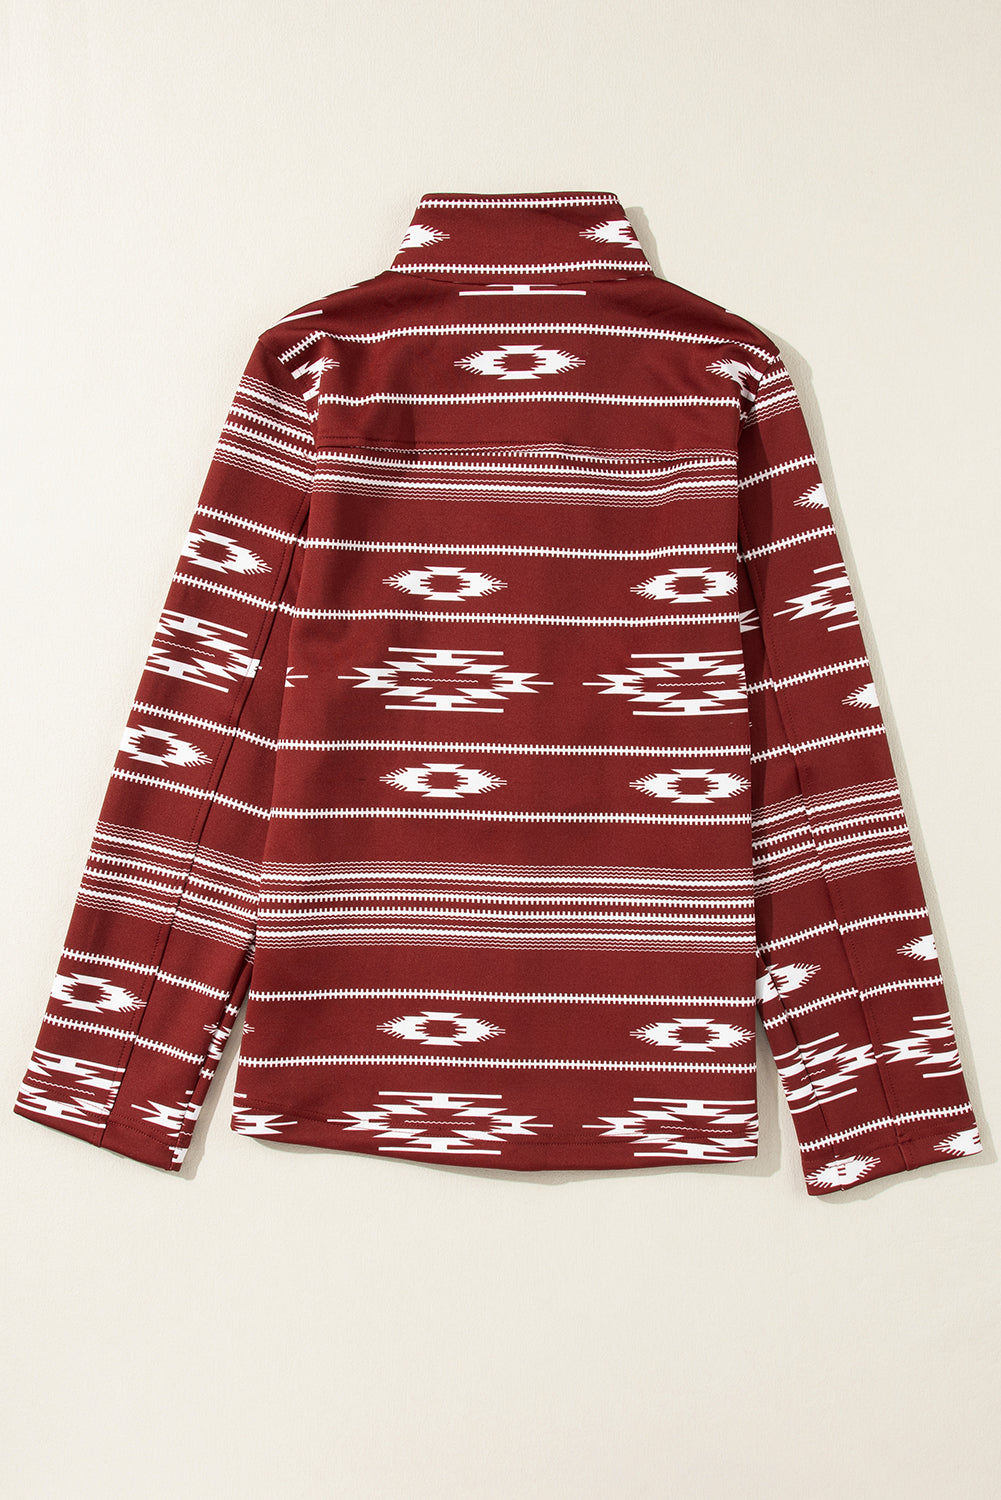 Veste zippée rouge à imprimé aztèque occidental Dahlia